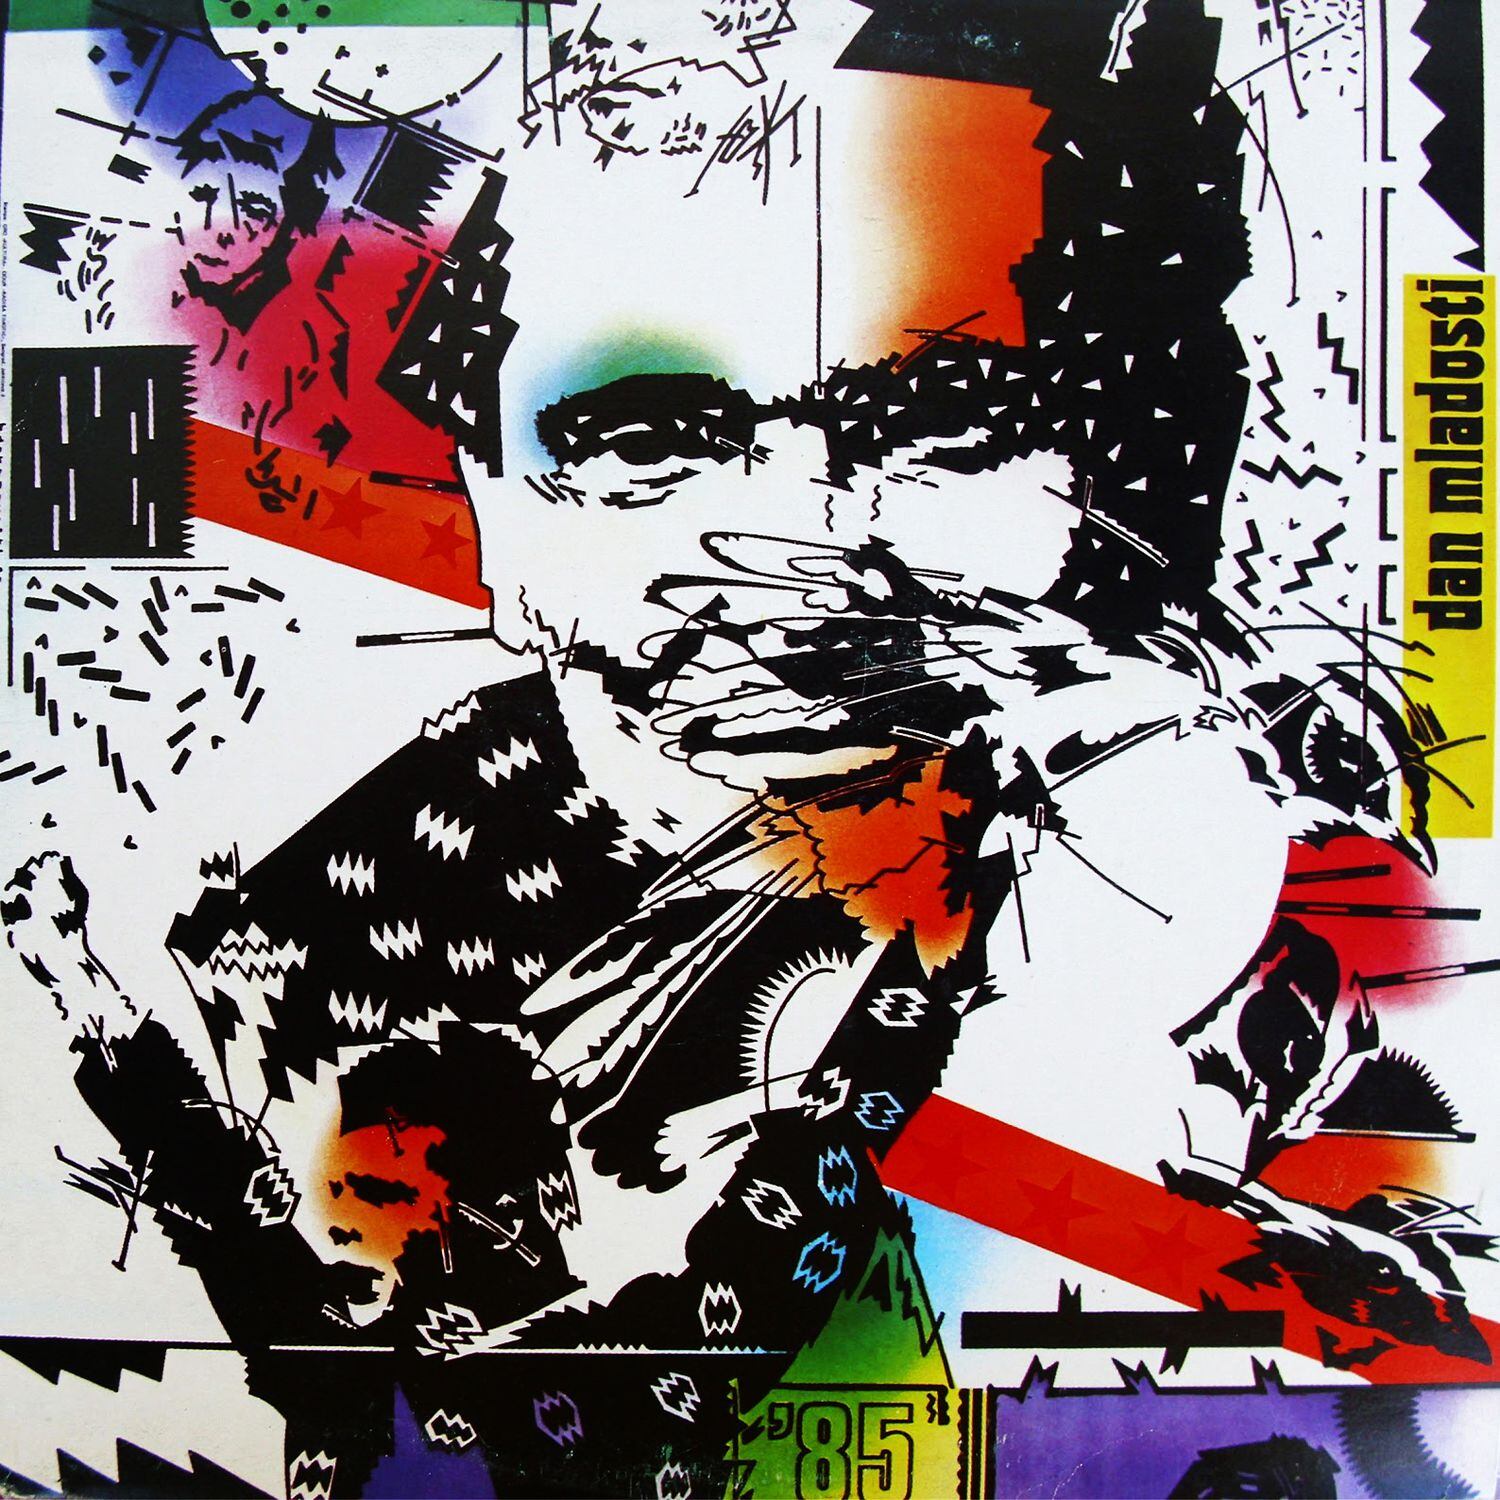 'Que el mundo sea más brillante', disco colectivo publicado con motivo del Día de la Juventud de 1985 con portada de Milan Simic.